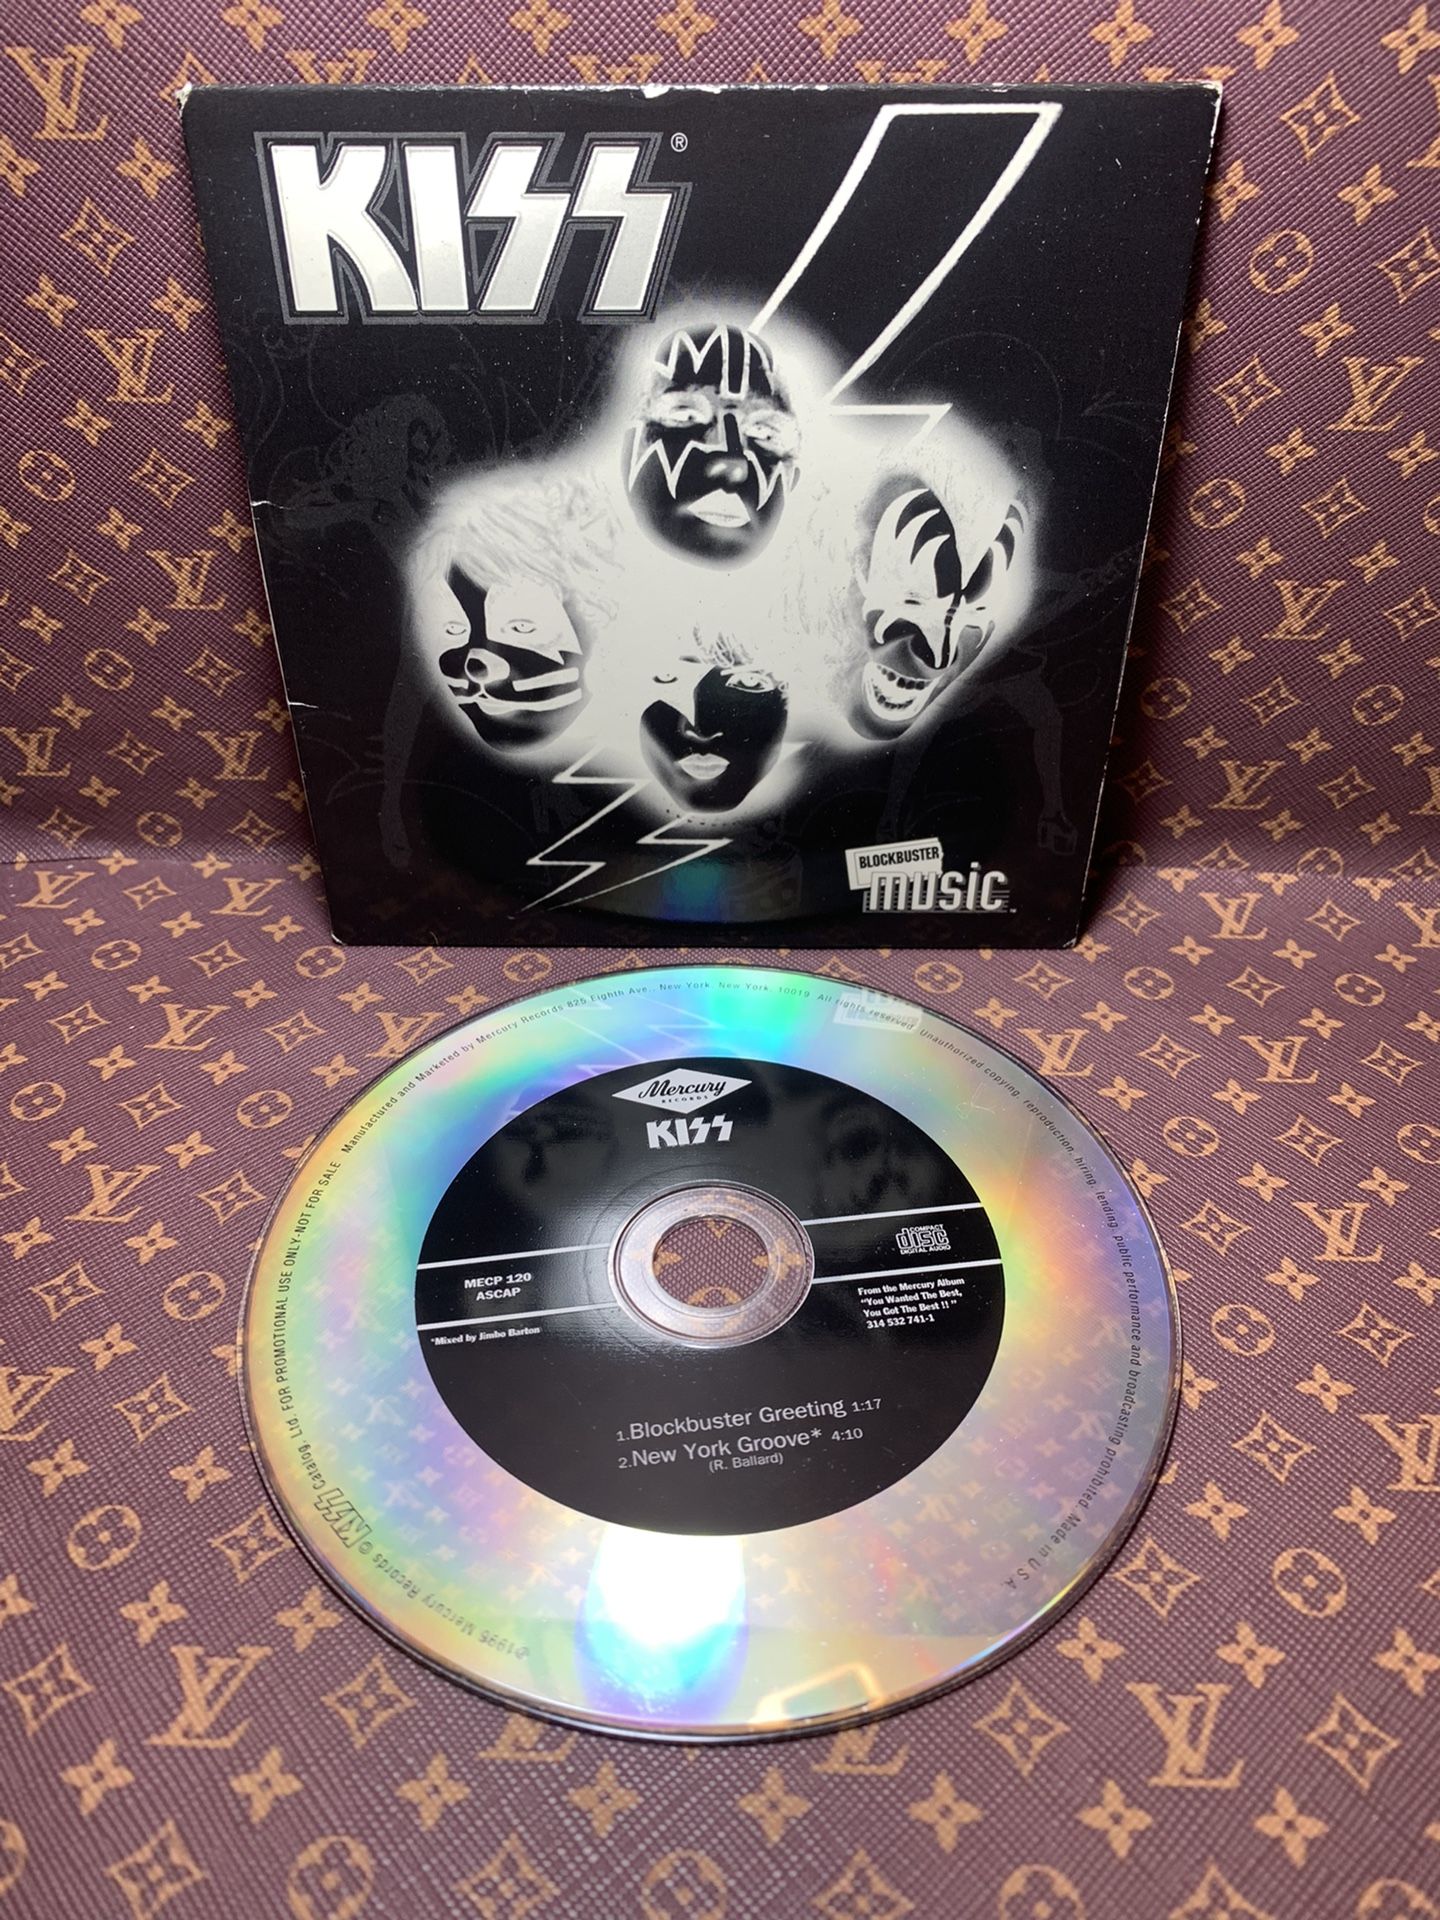 RARE!! COLLECTIBLE KISS CD ! 